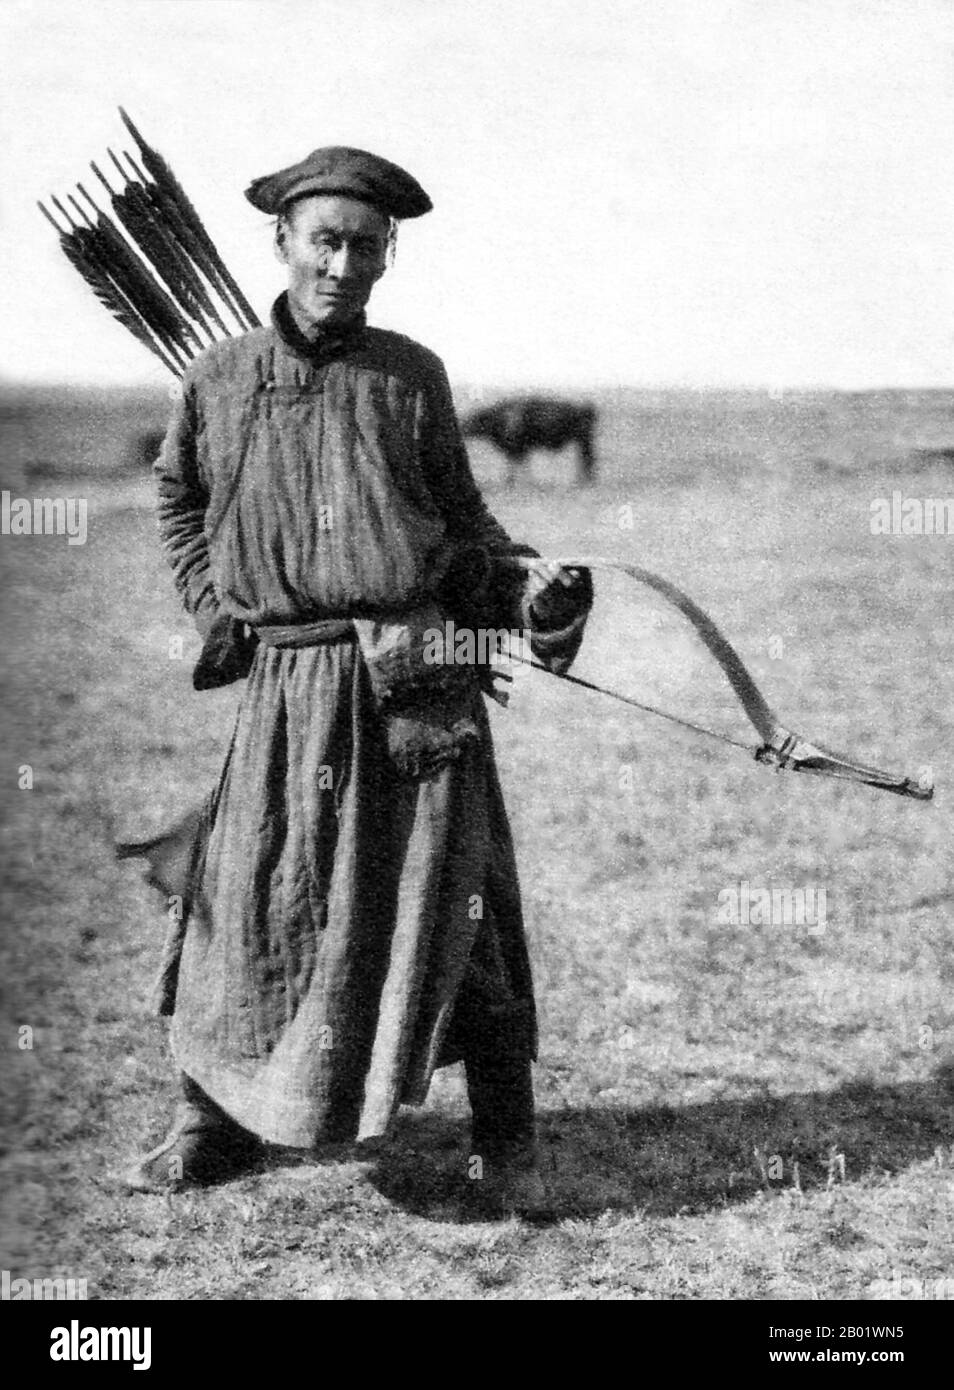 China/Innere Mongolei: Ein traditioneller mongolischer Bogenschütze im Innern Mongolischen Grasland, um 1940. Vorderansicht. Der mongolische Bogen ist ein wiederkehrender Verbundbogen, der für seine militärische Wirksamkeit bekannt ist. Die alten mongolischen Bögen, die während der Zeit von Dschingis Khan verwendet wurden, waren kleiner als die modernen Waffen, die heute auf den meisten Naadam-Festivals verwendet wurden. Moderne mongolische Bögen sind größer und haben Schnur-Brücken. Das moderne Design ähnelt sehr den mandschurischen Bögen, die das chinesische Militär während der Qing-Dynastie verwendet hat. Antike und moderne mongolische Bögen sind Teil der asiatischen Tradition von Verbundbögen. Stockfoto